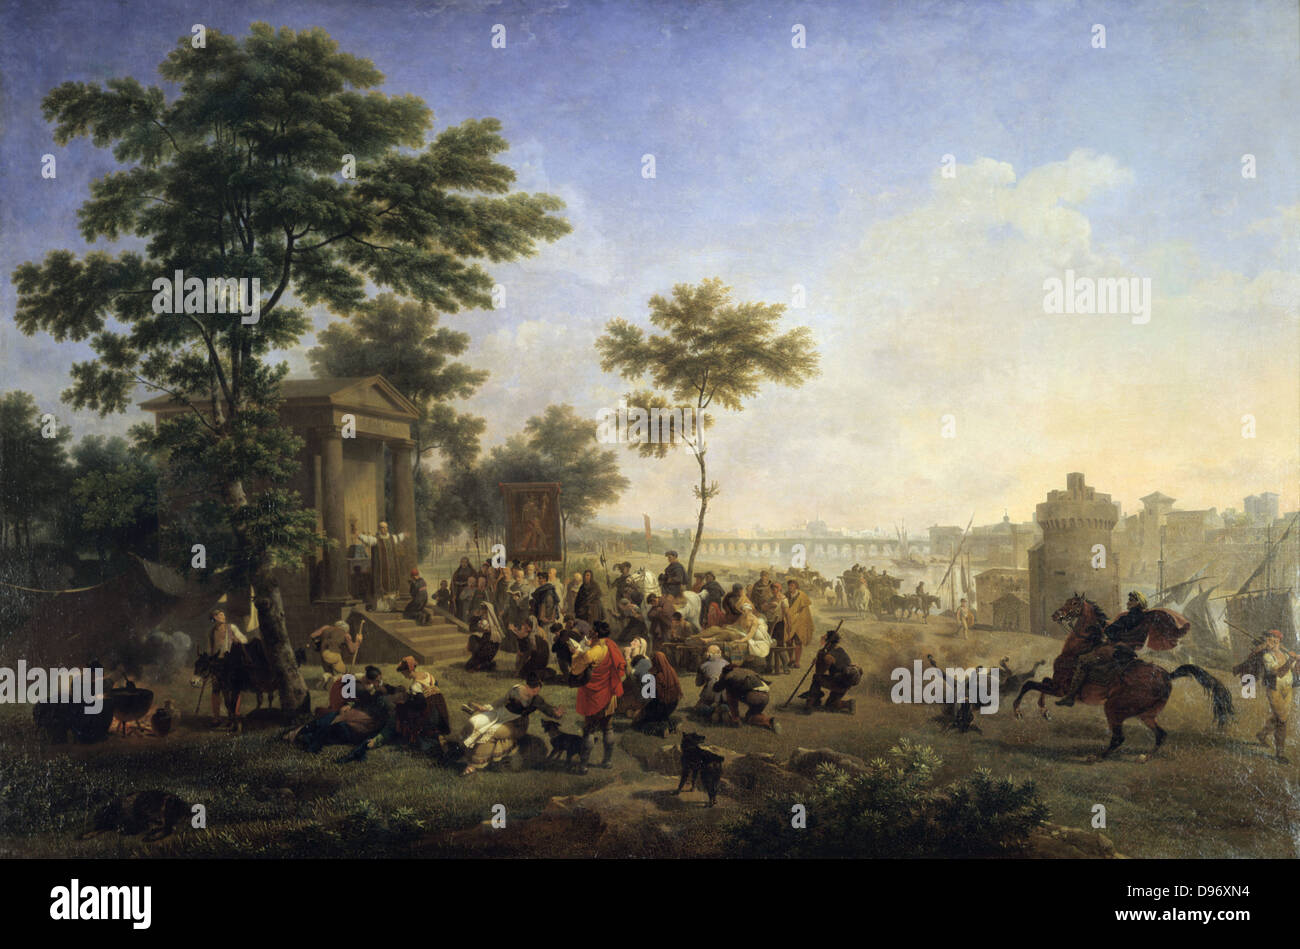 Masse d'air ouvert dans la campagne romaine". Nicolas Antoine Taunay (1775-1830) peintre français. Huile sur toile. Banque D'Images